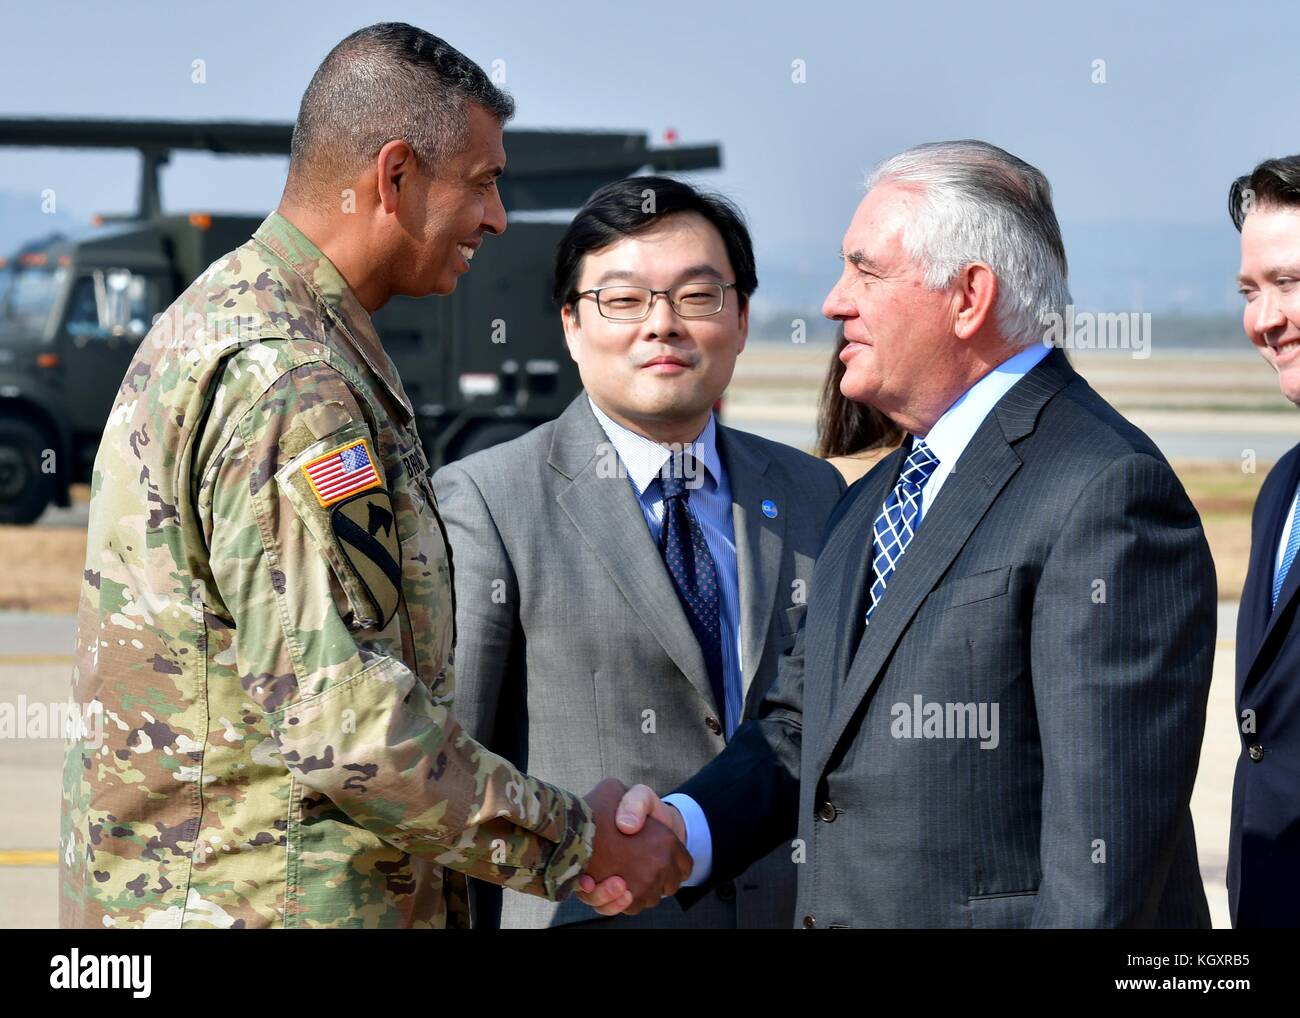 Les forces de l'armée américaine de Corée commandant vincent Brooks (à gauche) rencontre le secrétaire d'État des États-Unis, Rex Tillerson, lors d'une visite à la base de la force aérienne osan 7 novembre, 2017 à pyeongtaek, la Corée du Sud. (Photo de Franklin. r ramos via planetpix) Banque D'Images